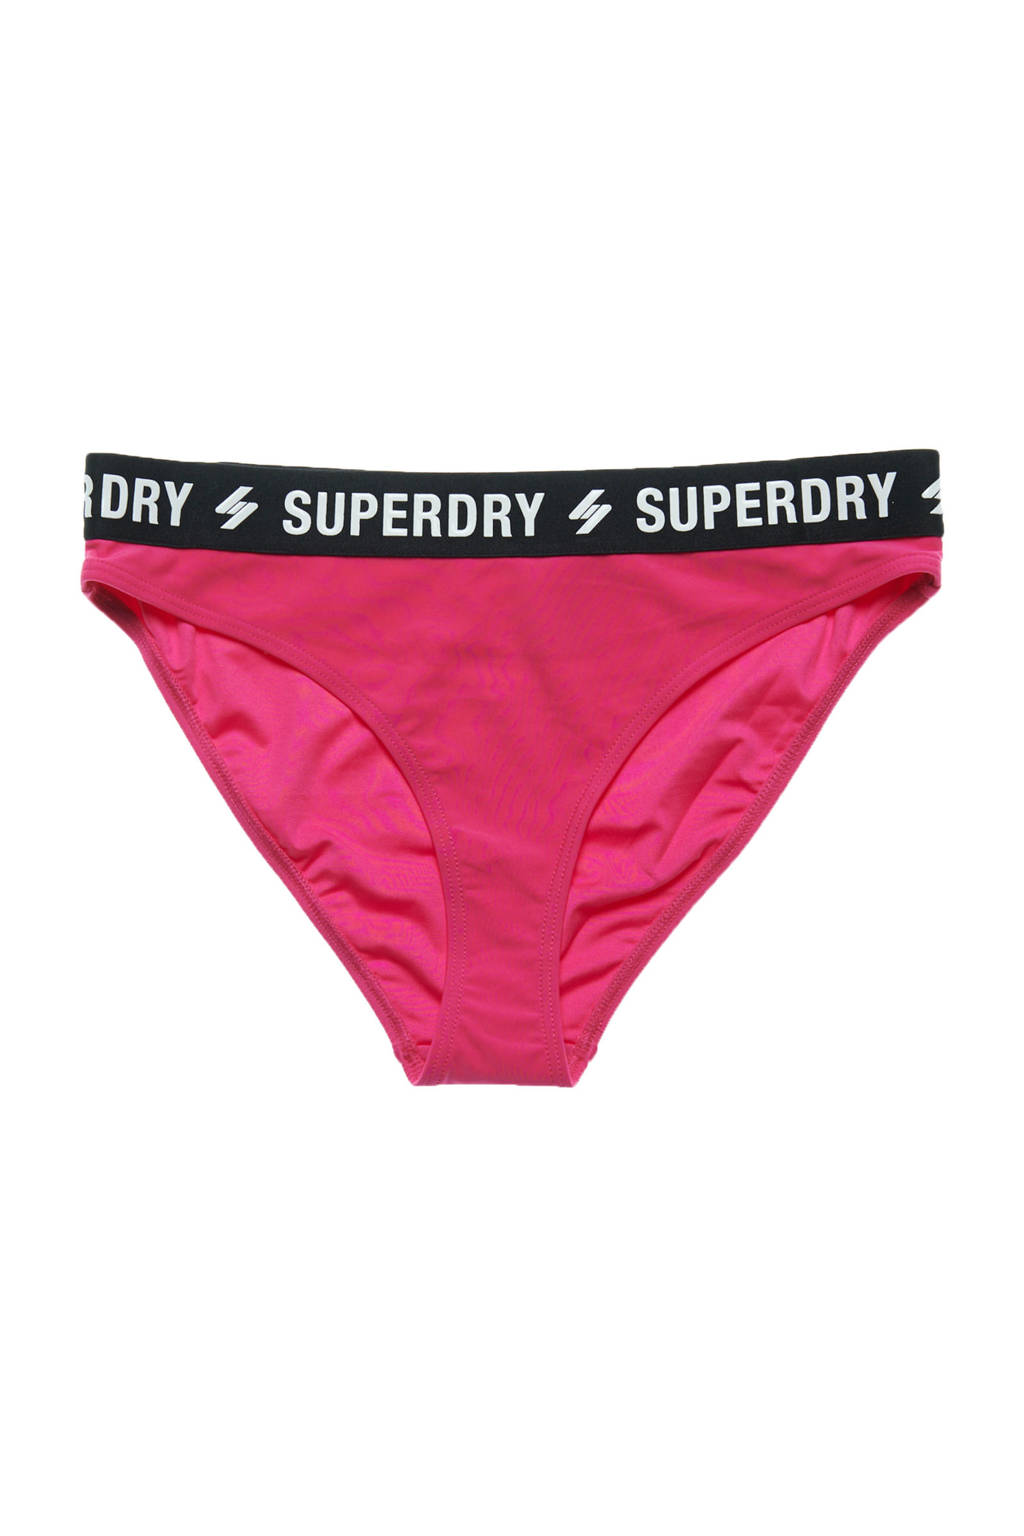 Superdry bikinibroekje roze